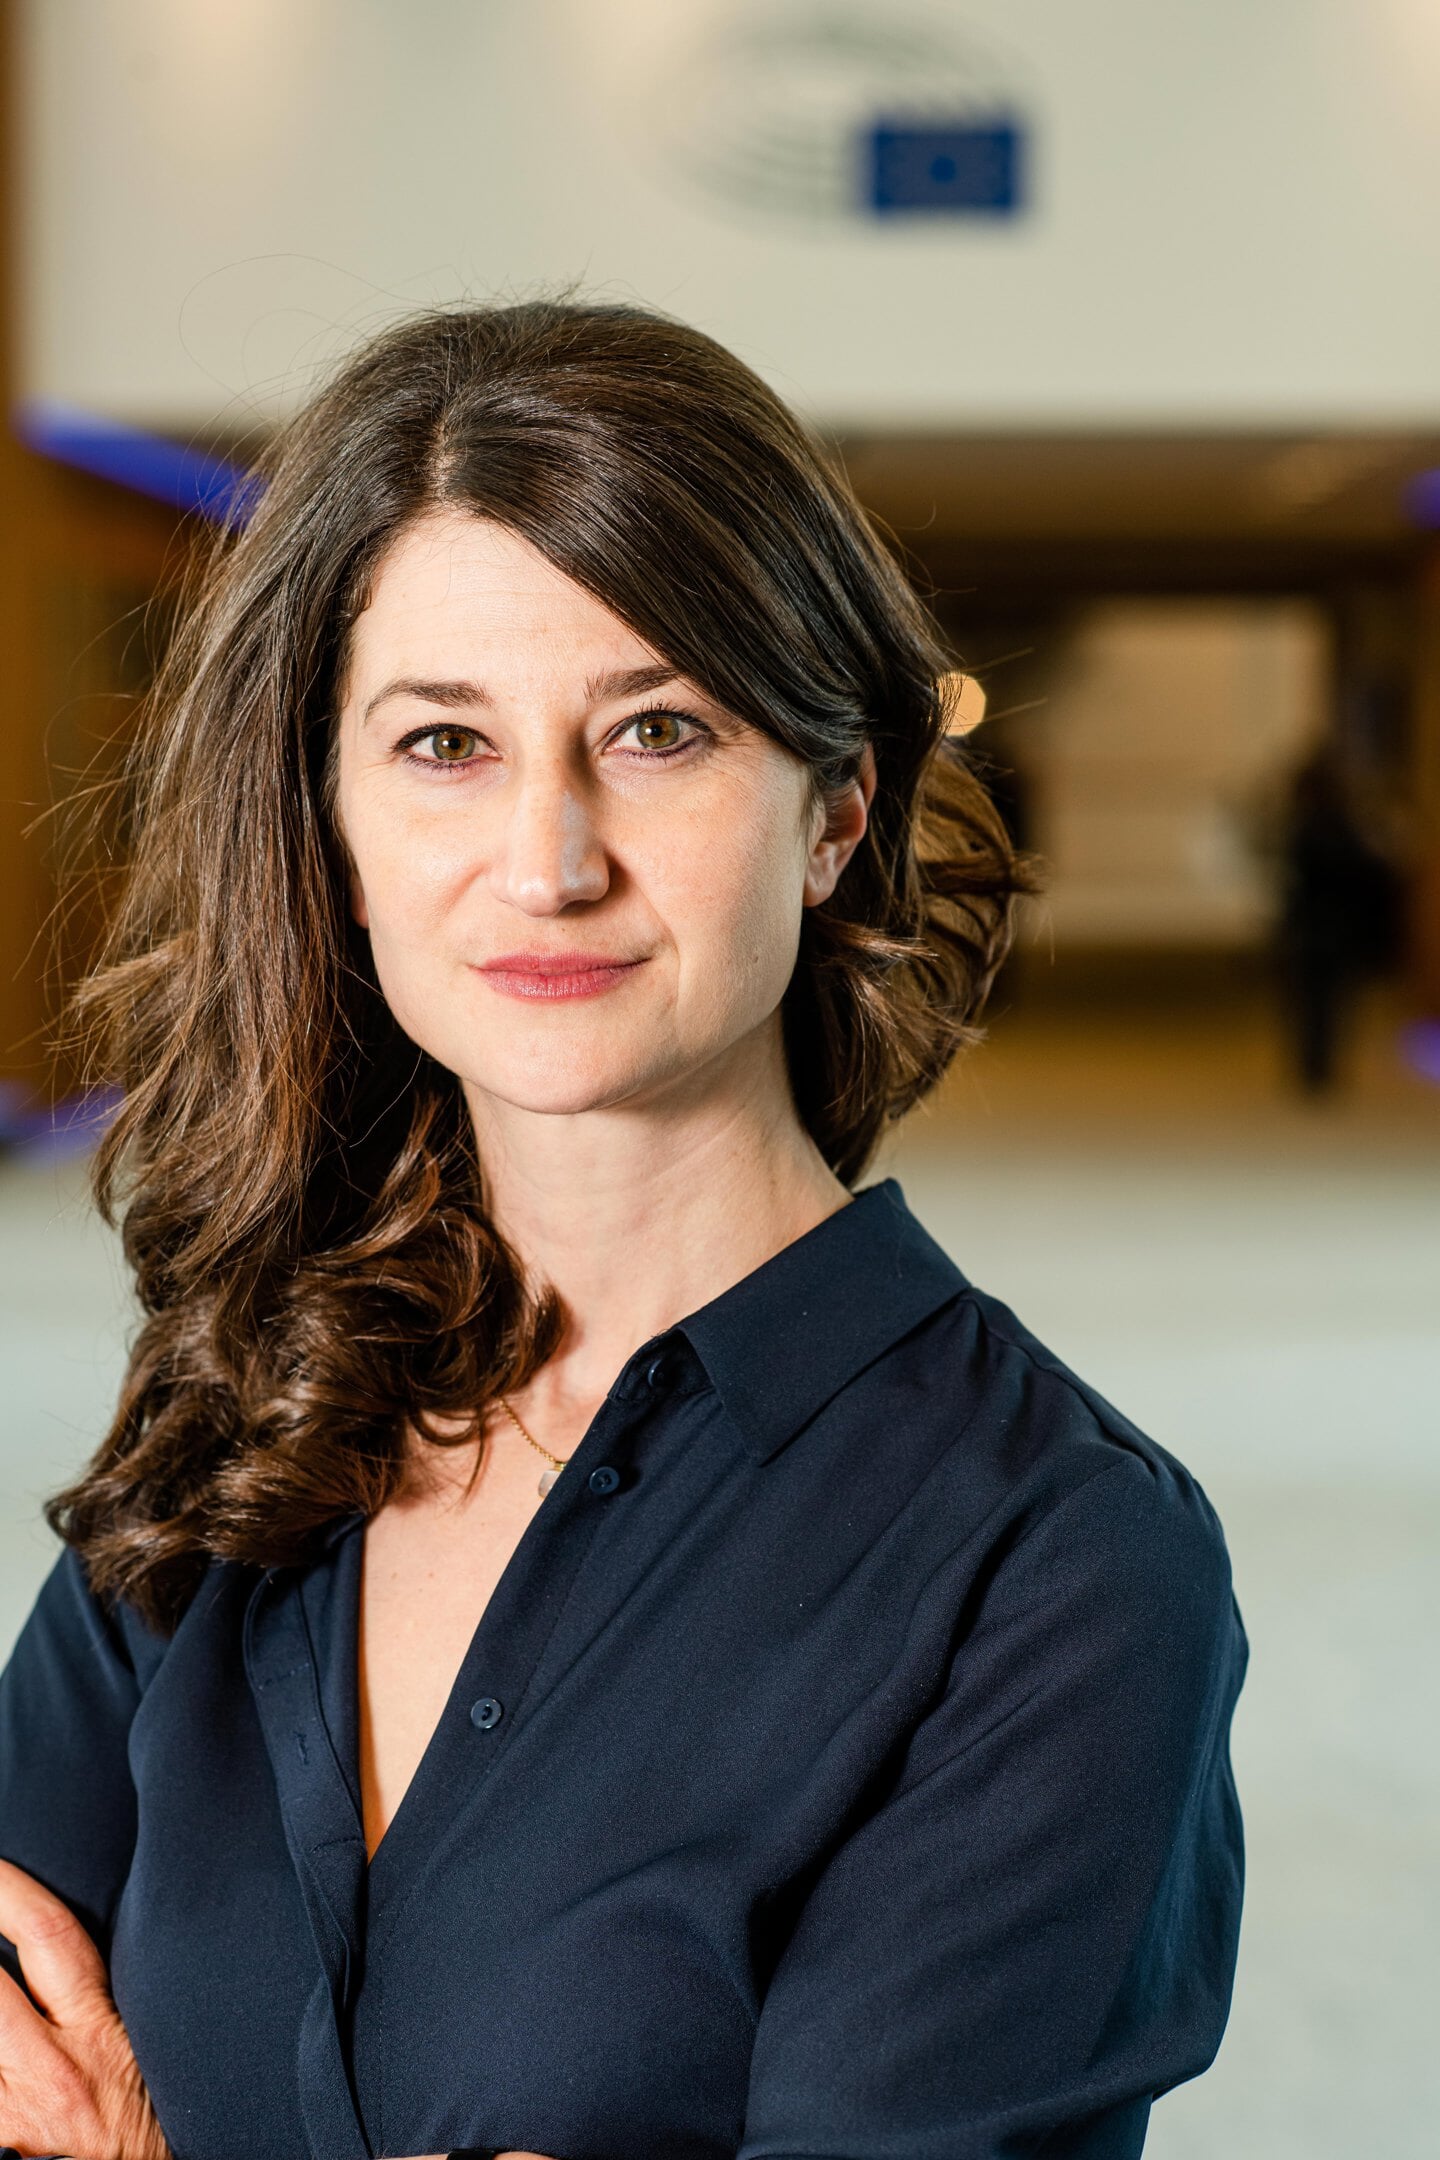 PvdA-Europarlementarier Lara Wolters: 'Wij vragen bedrijven niet het onmogelijke.'